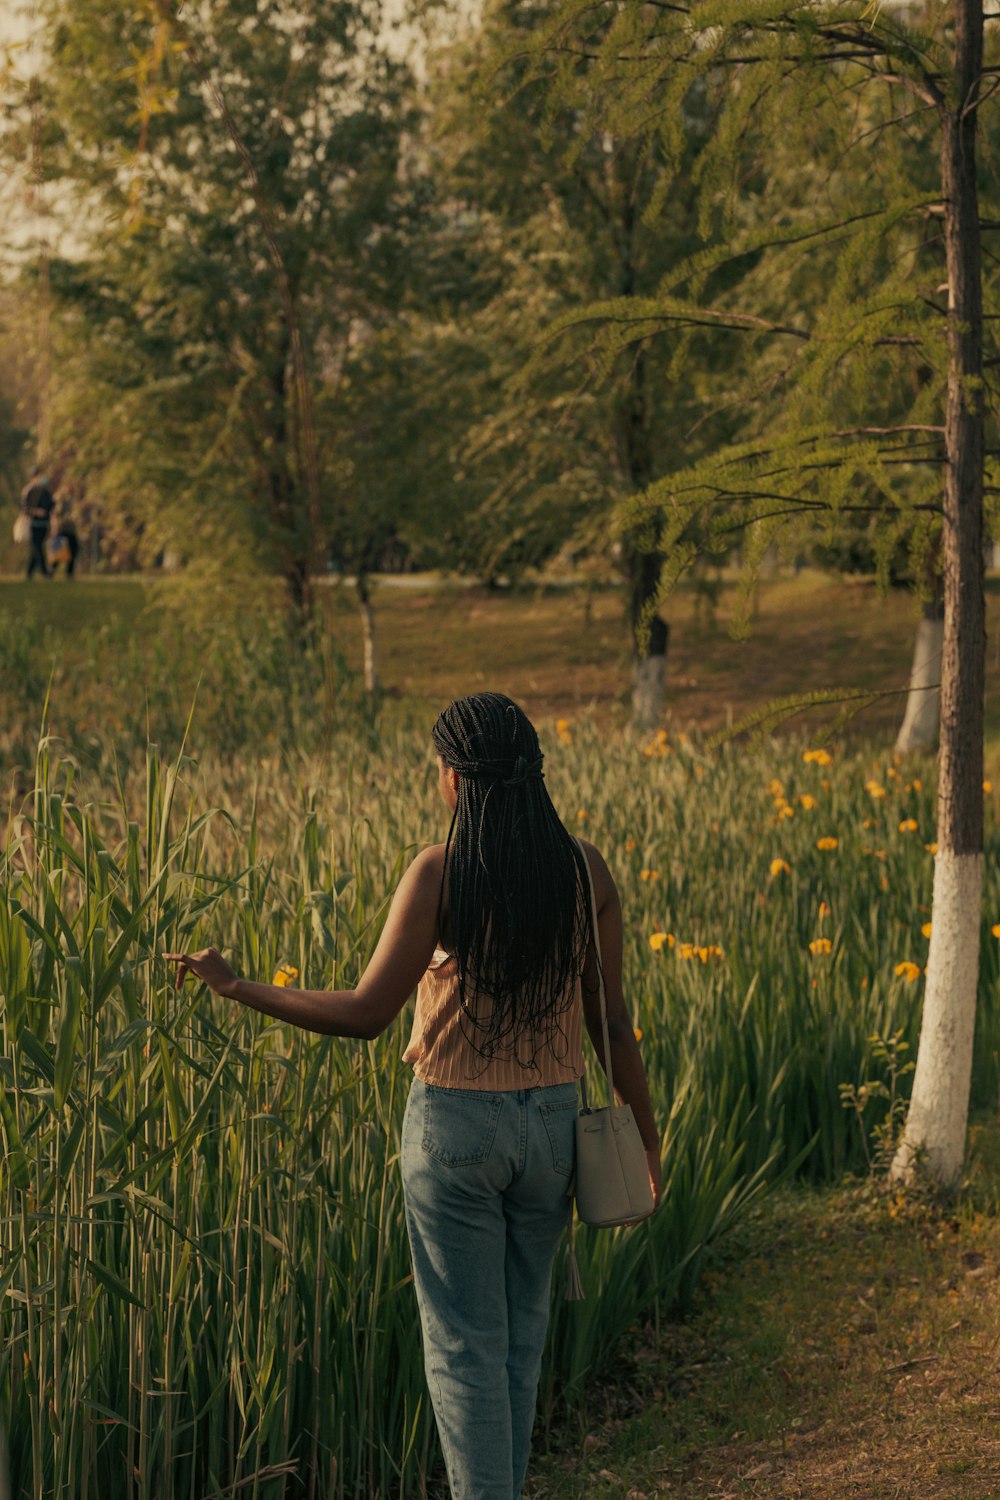 a woman walking through a field of tall grass